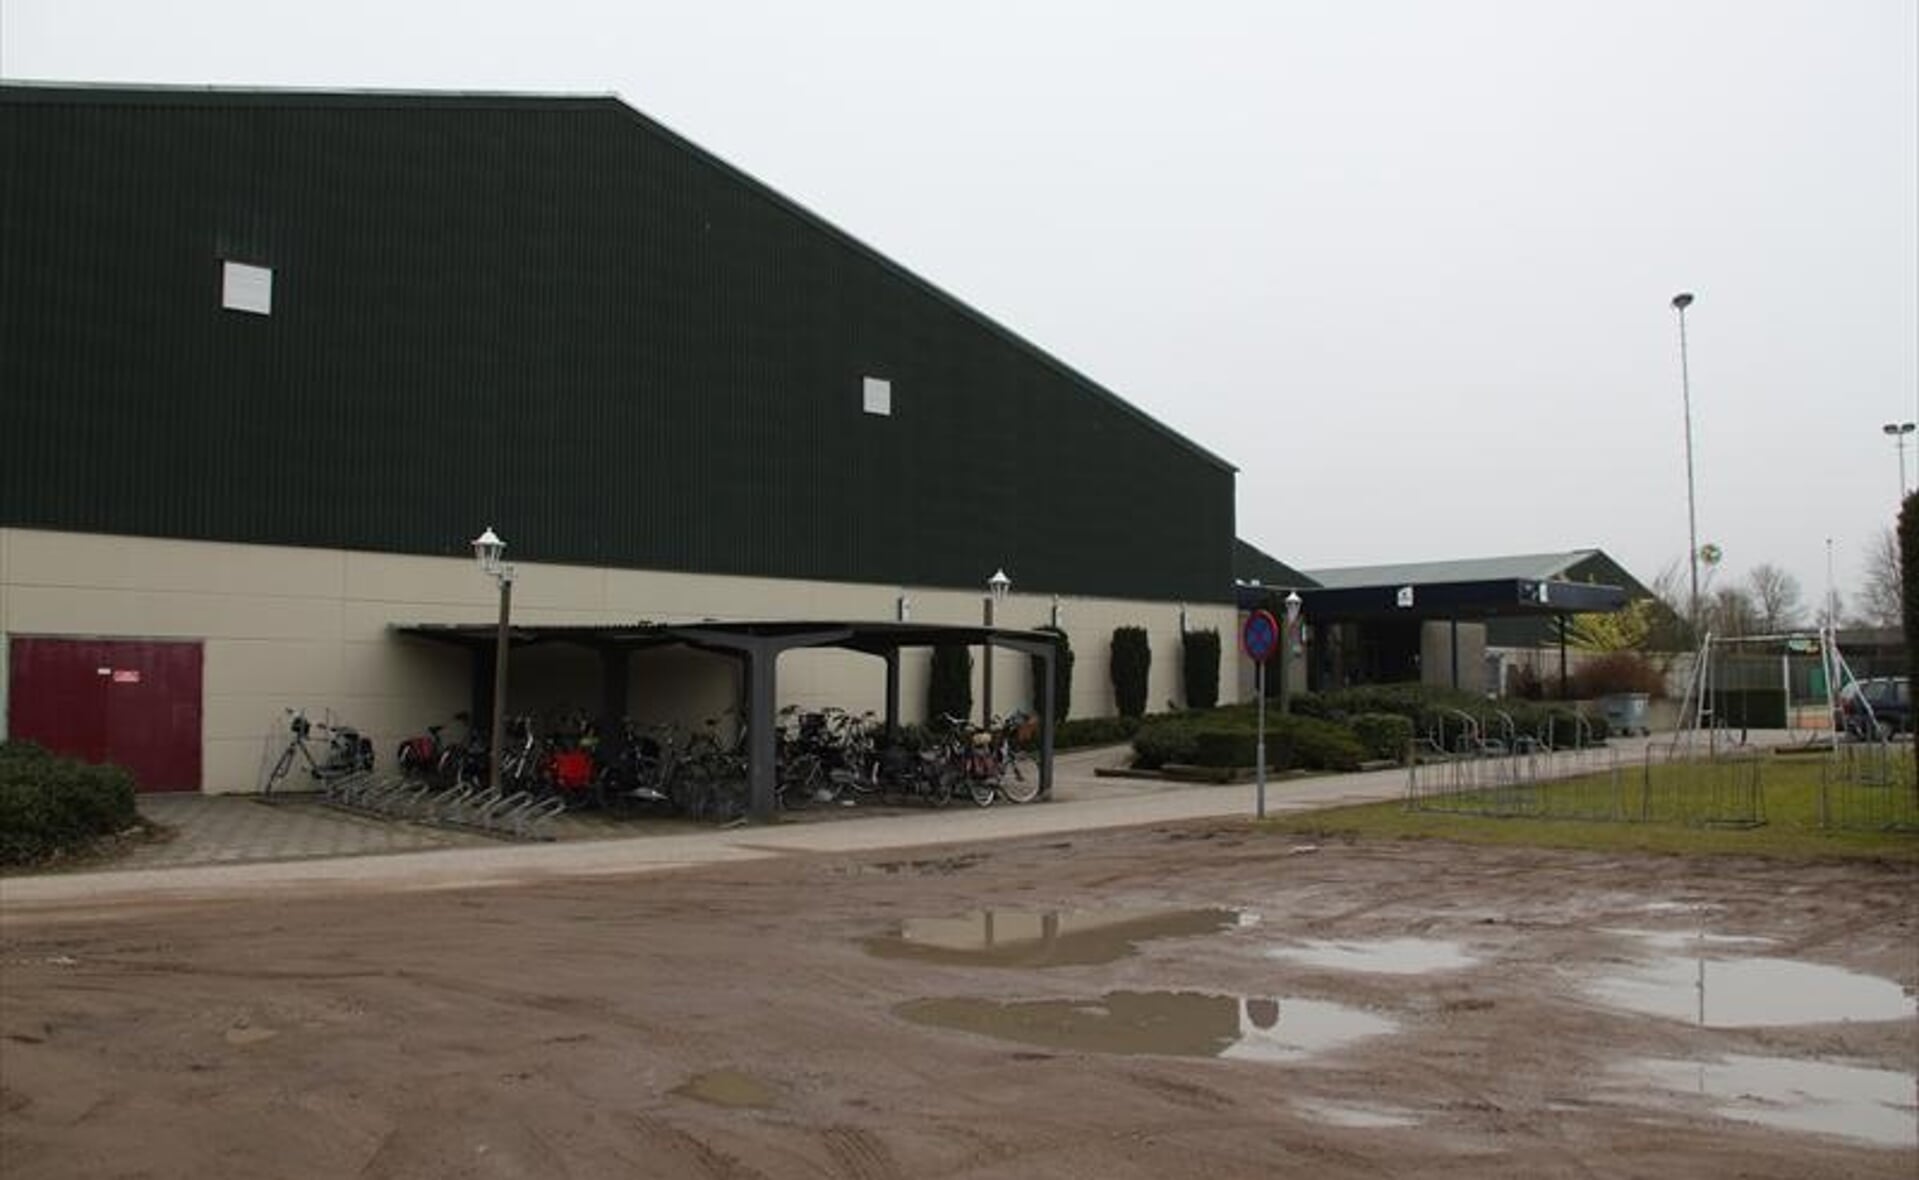 Sportcomplex De Braken biedt onderdak aan ruim tweeduizend sporters. Zij waren lange tijd in onzekerheid of ze er na de winterstop nog wel terecht konden. 